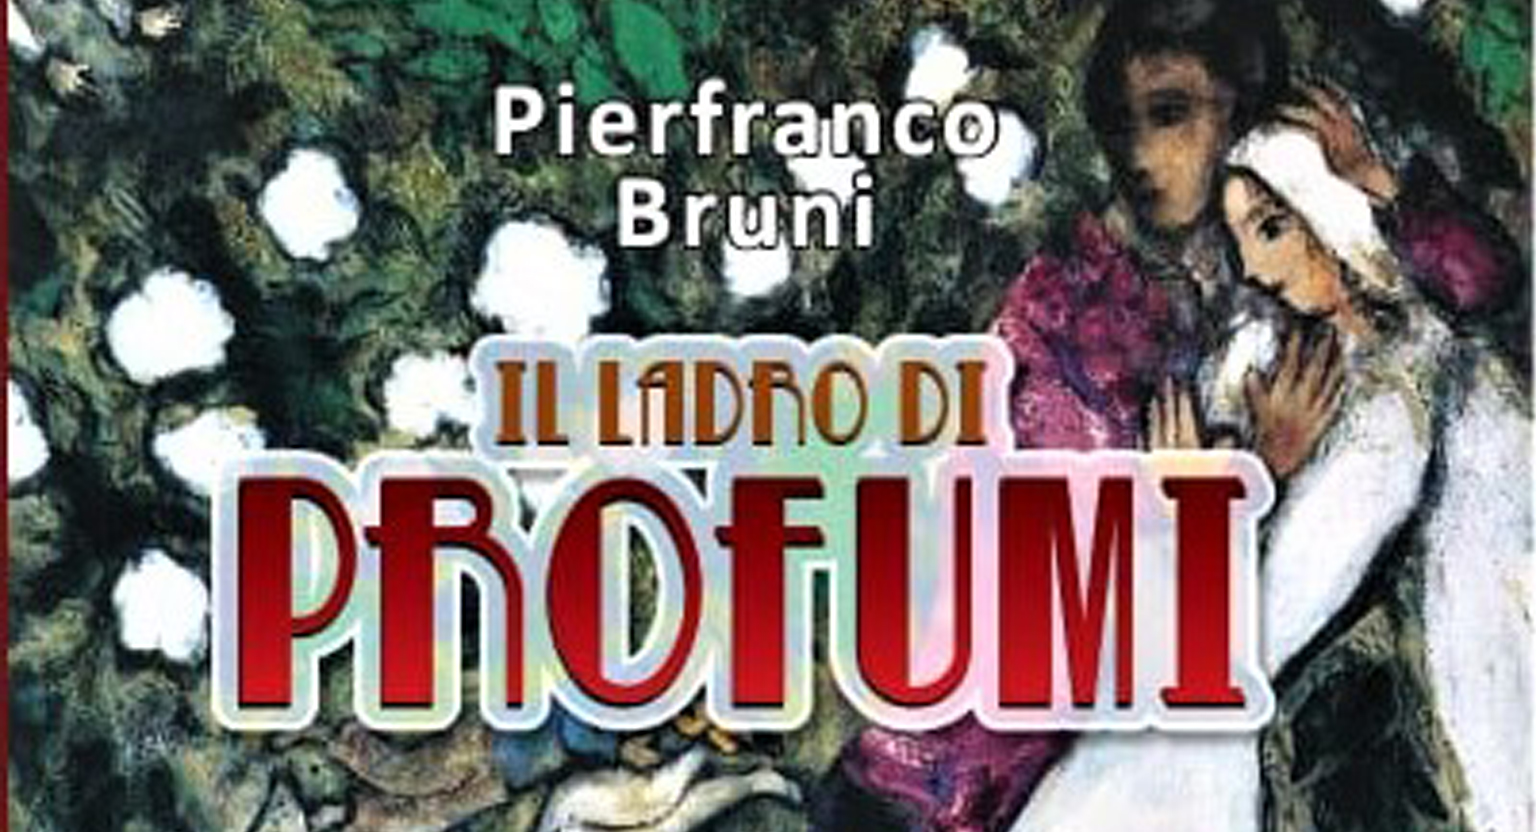 Il ladro di profumi, l’ultimo libro di Pierfranco Bruni